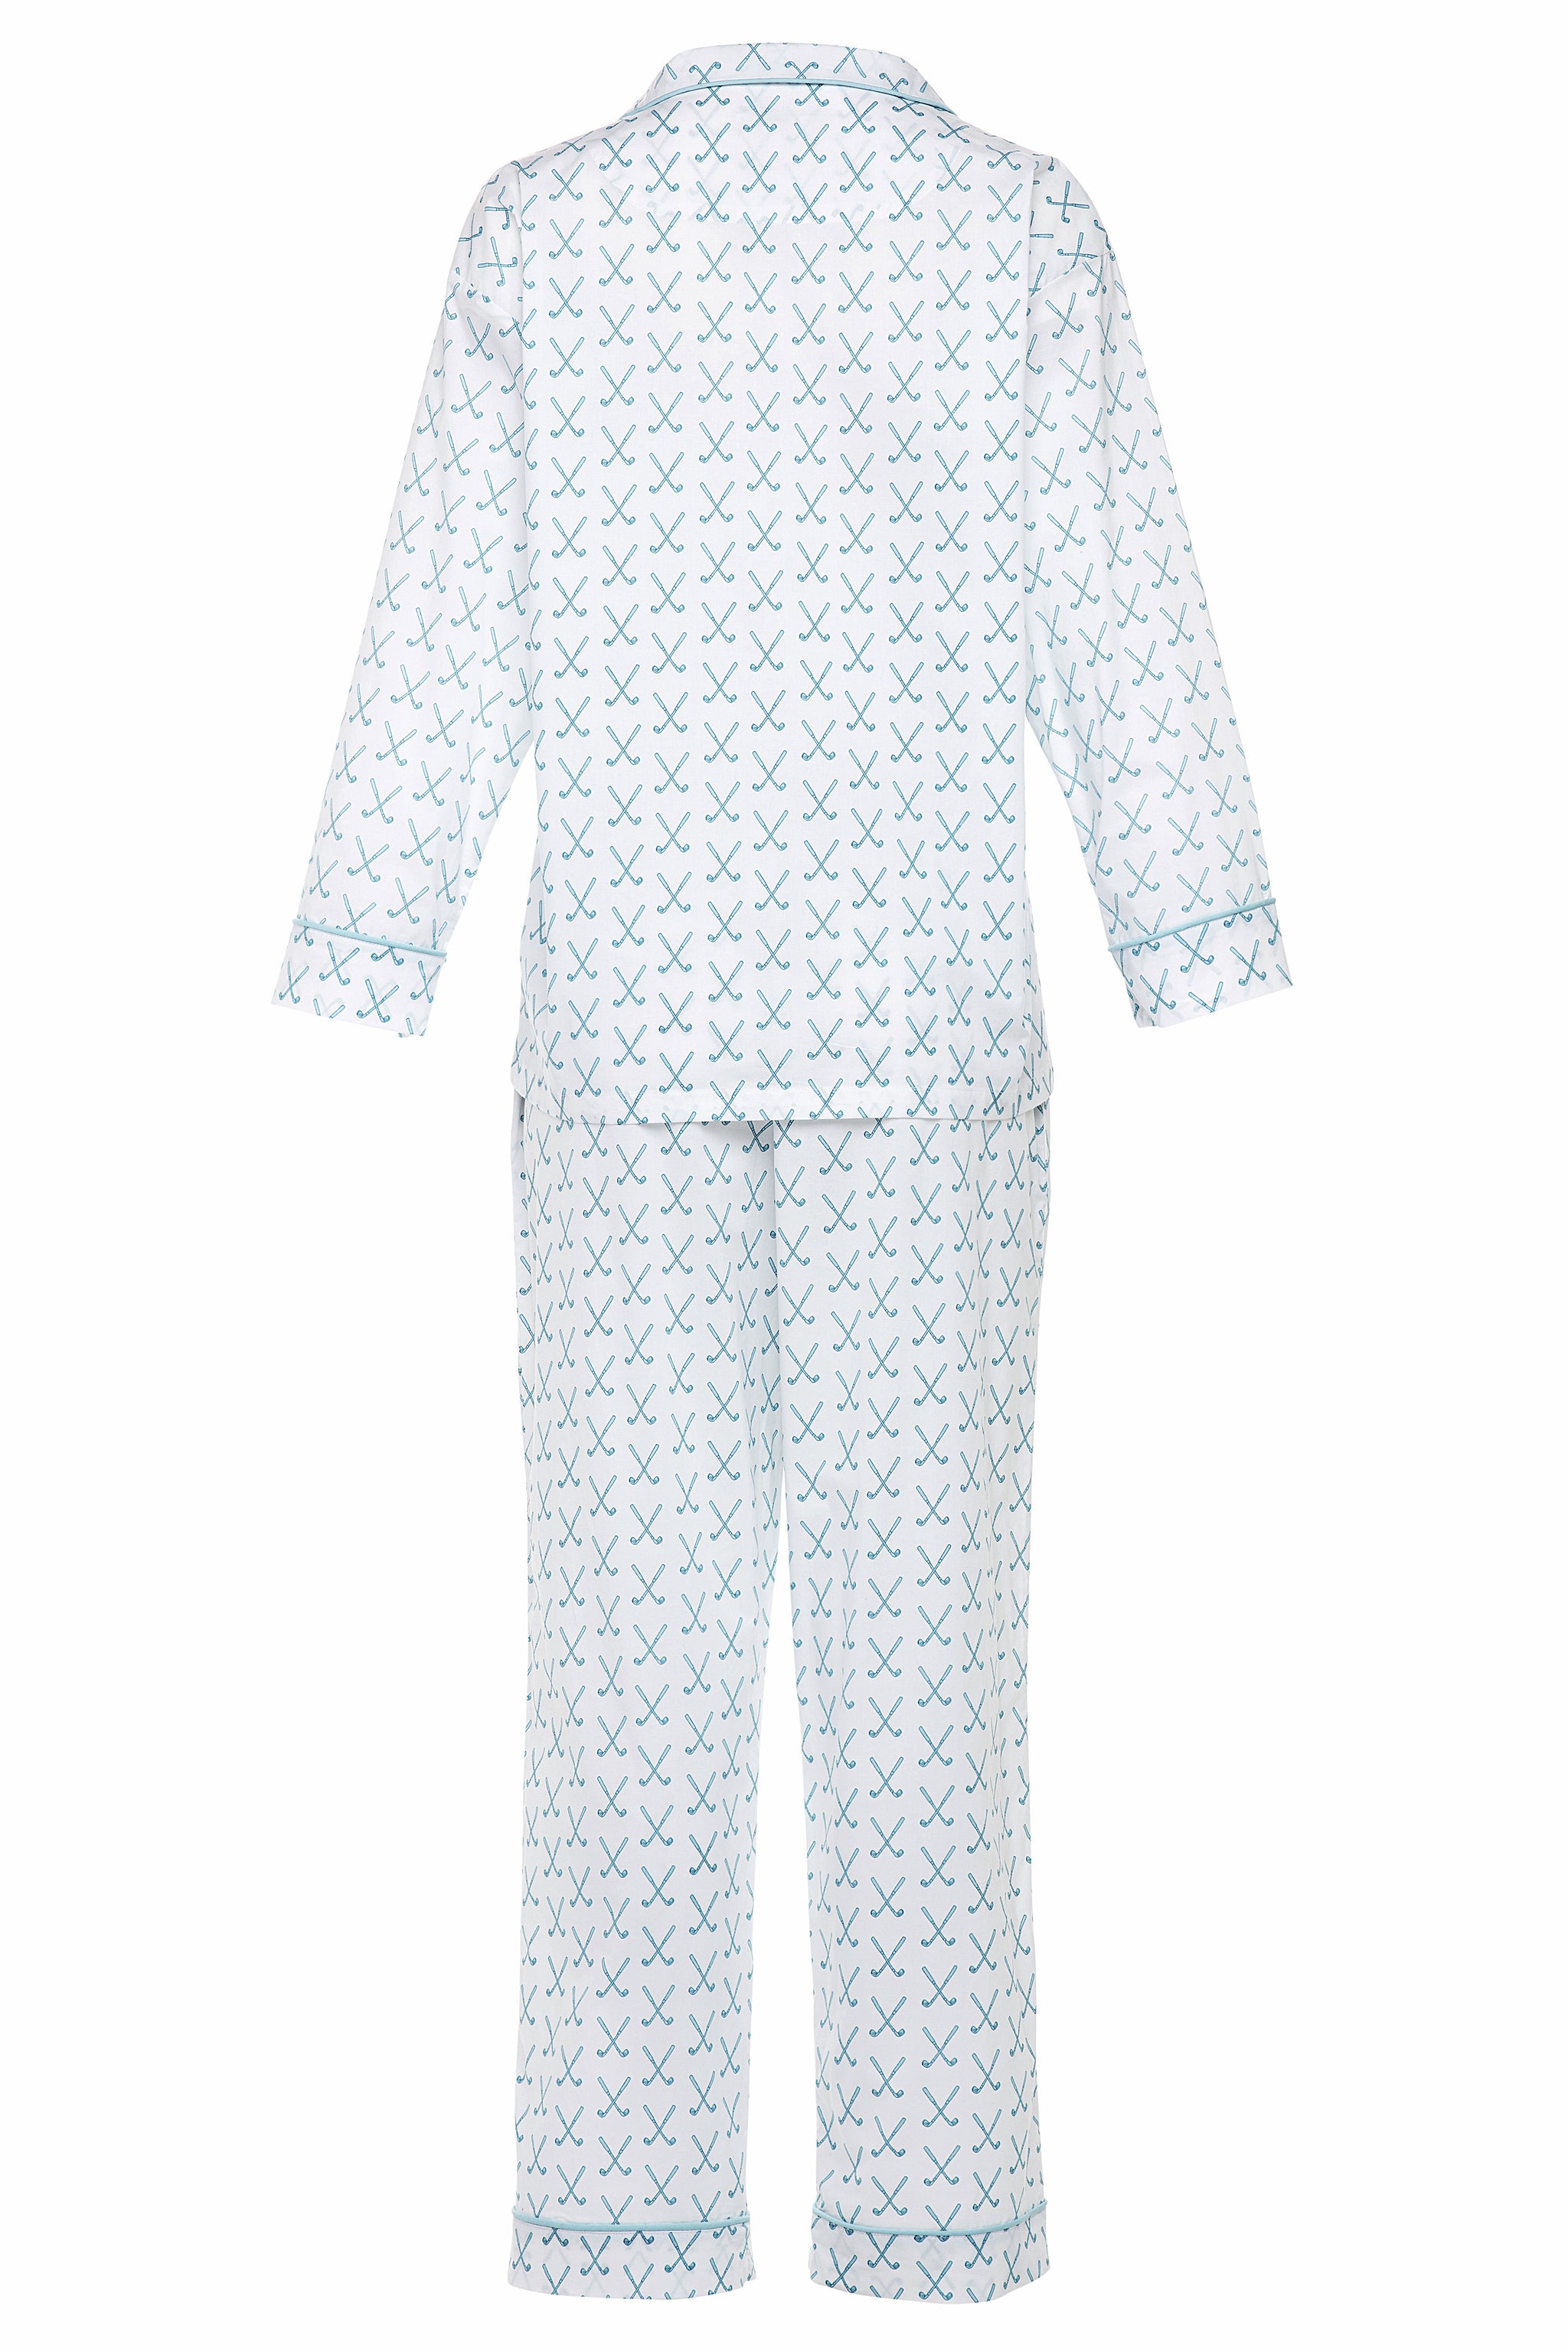 Lorient Block Print Long Pajama Set - New | Marigot Collection